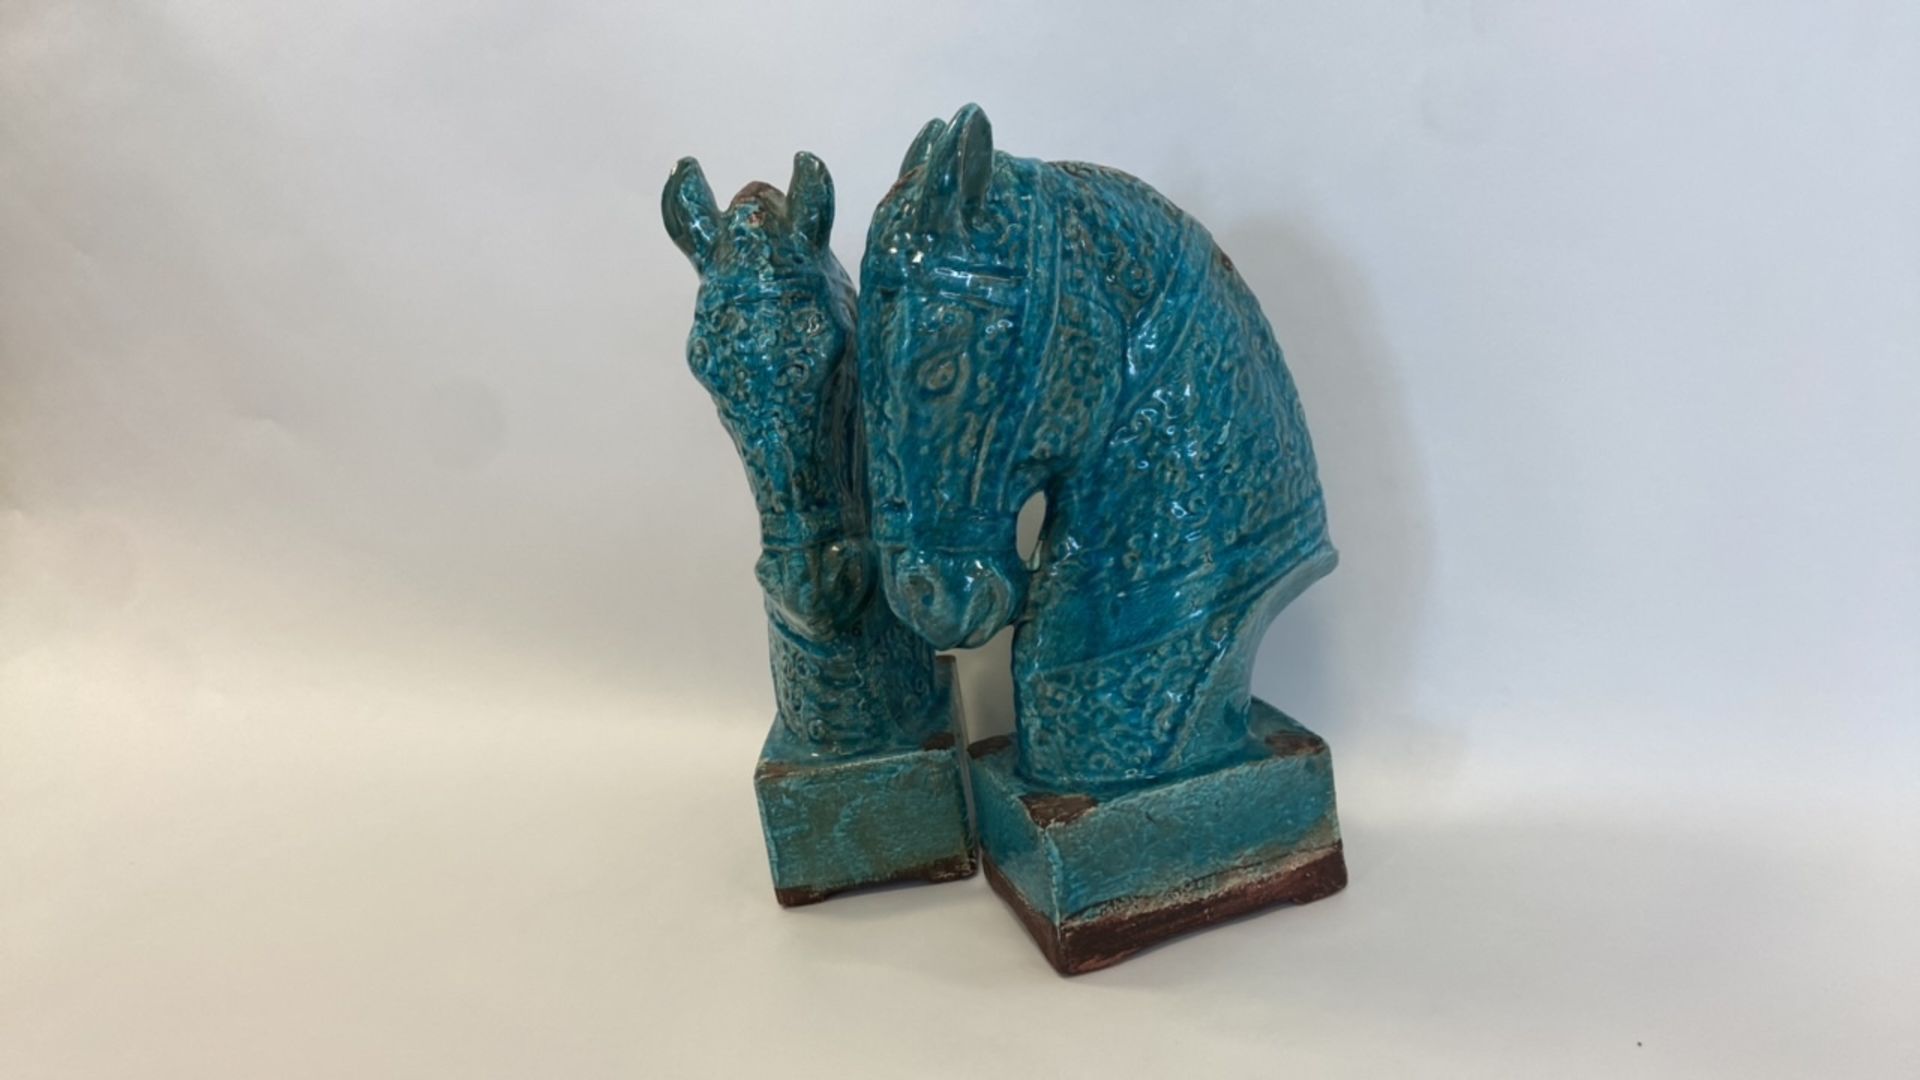 Antique, Handmade Ceramic Horse Statue - Image 2 of 8